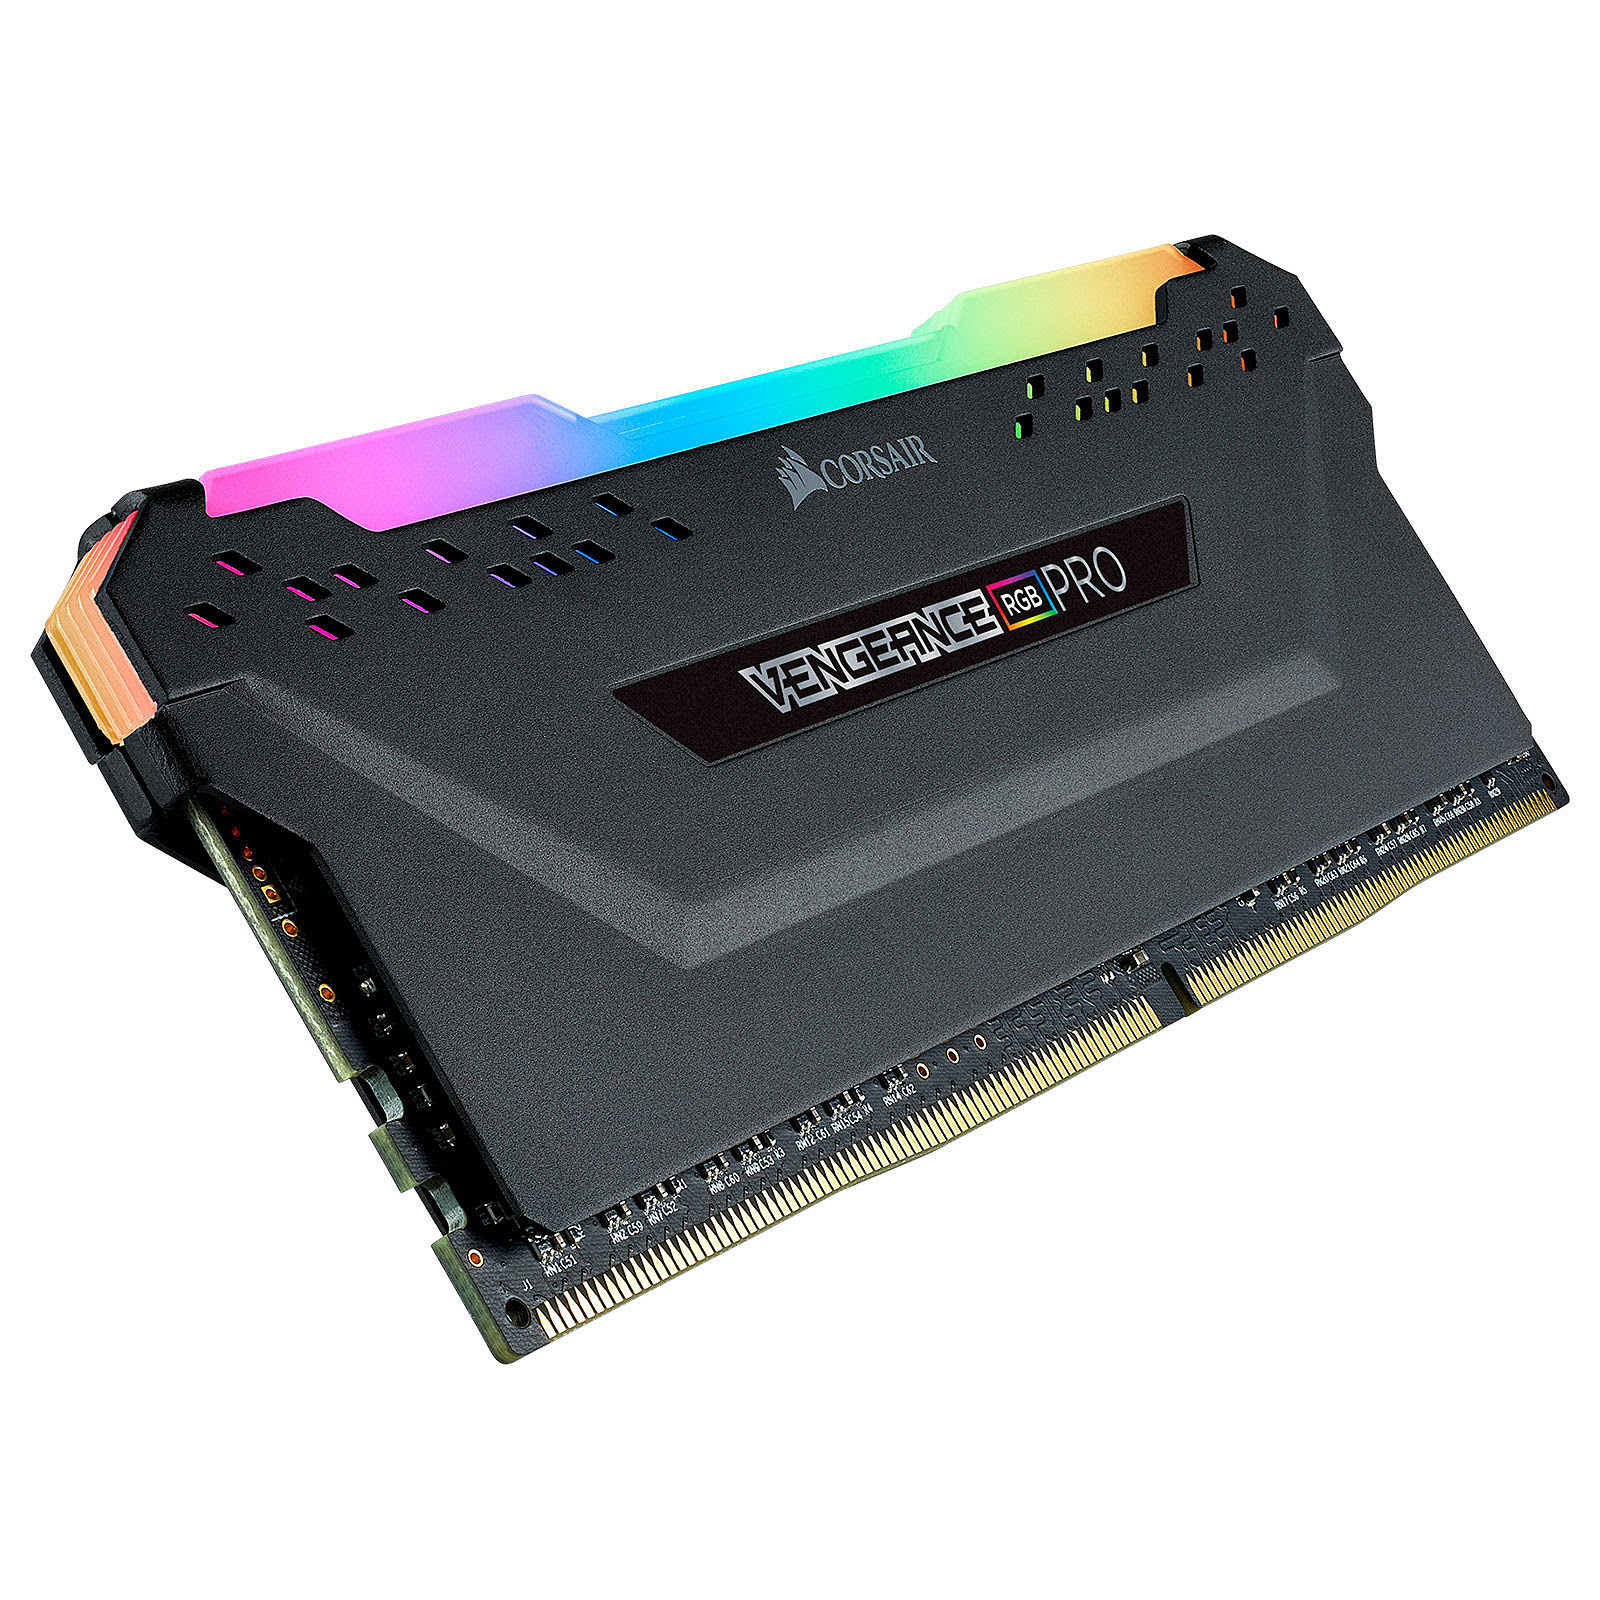 Corsair Vengeance RGB Pro 8Go (1x8Go) DDR4 3200MHz - Mémoire PC Corsair sur grosbill-pro.com - 3